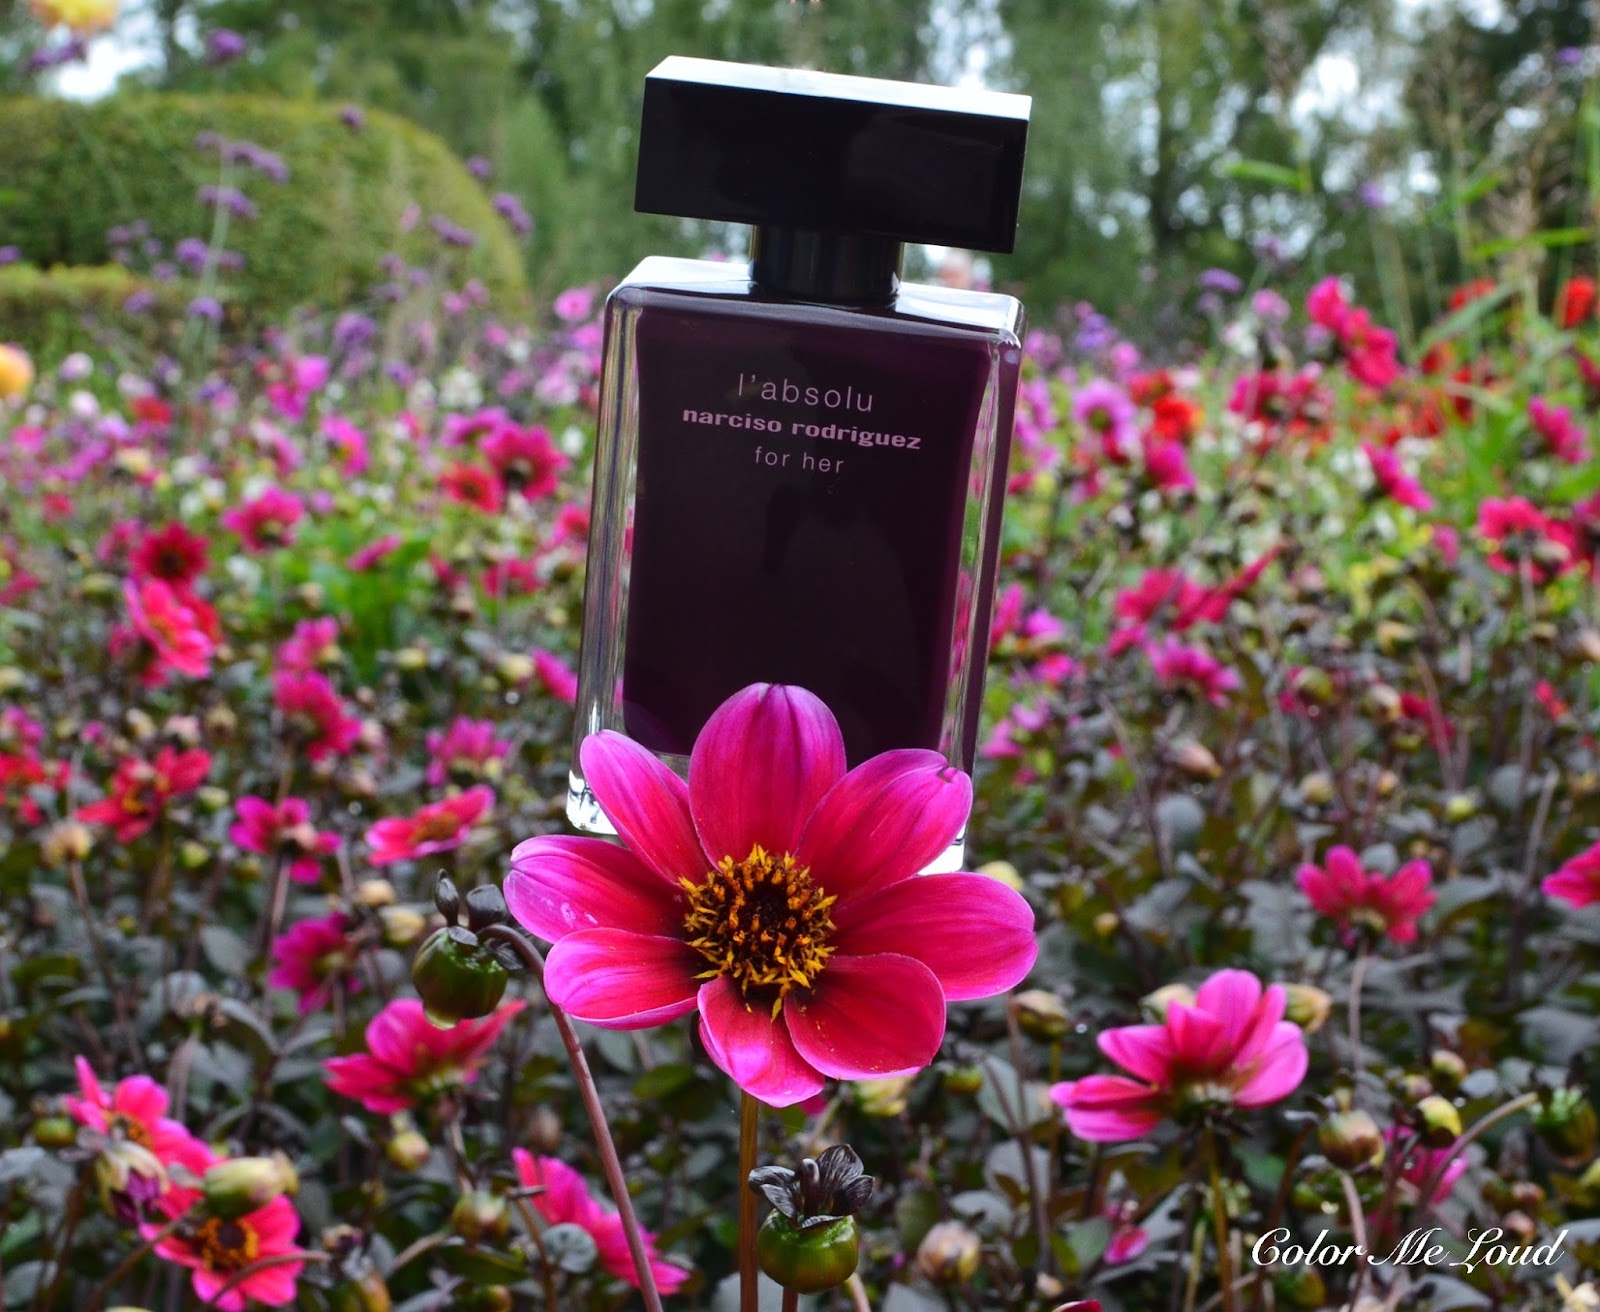 Narciso Rodriguez L'Absolu For Her Eau de Parfum, Review | Color Me Loud